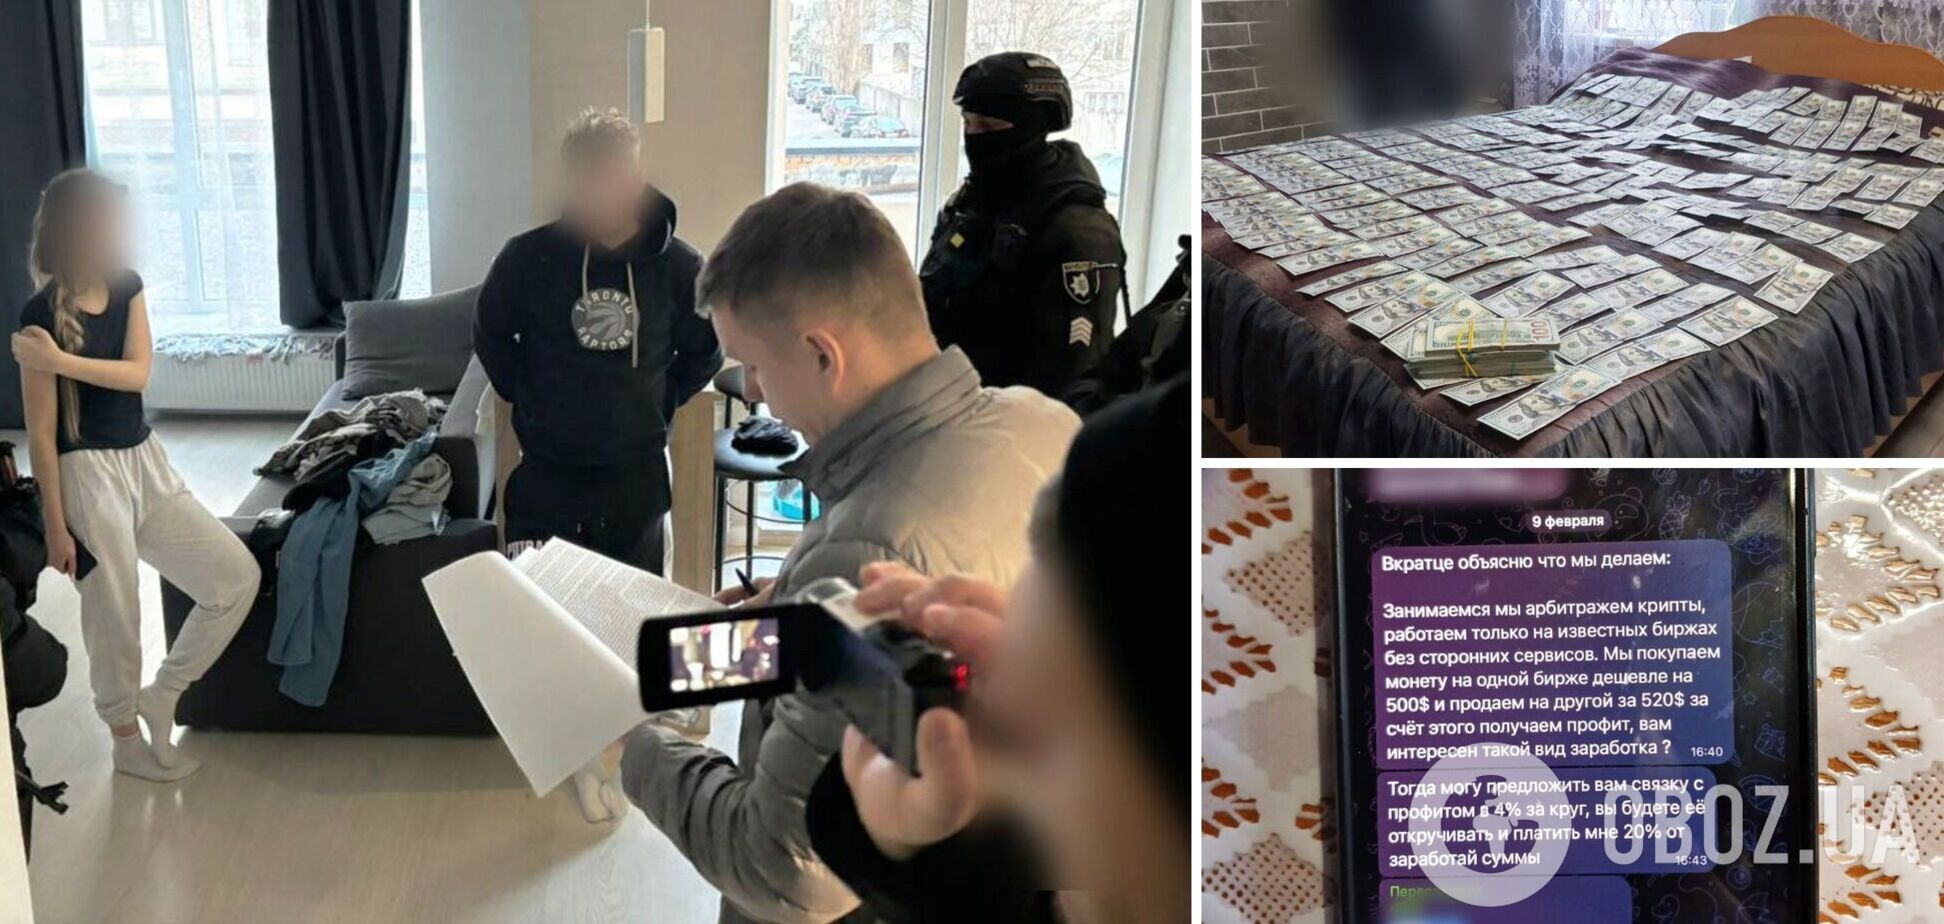 Правоохранители провели 28 обысков в нескольких регионах Украины